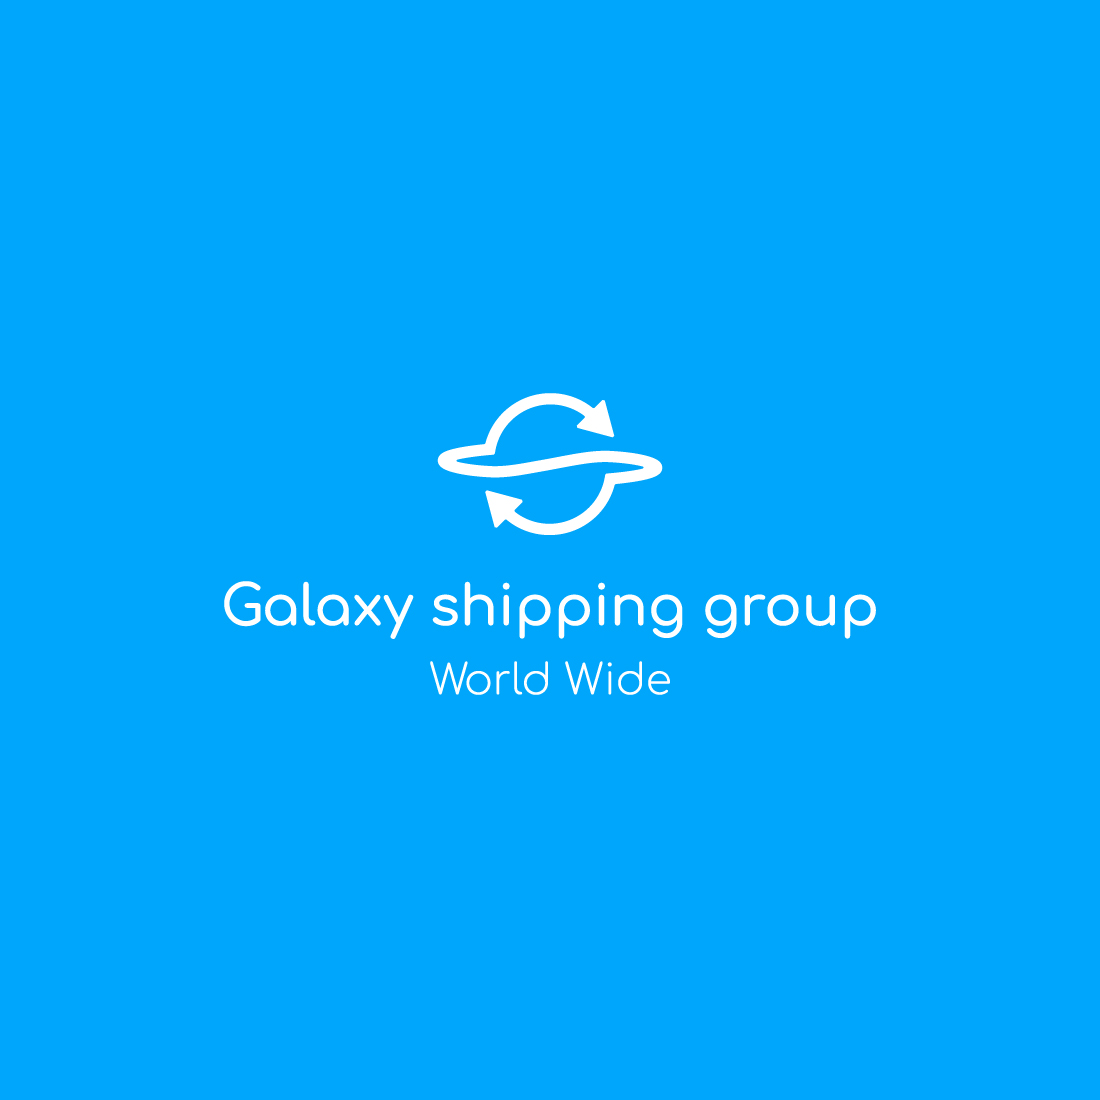 galaxy logo, planet logo, arrow logo preview image.